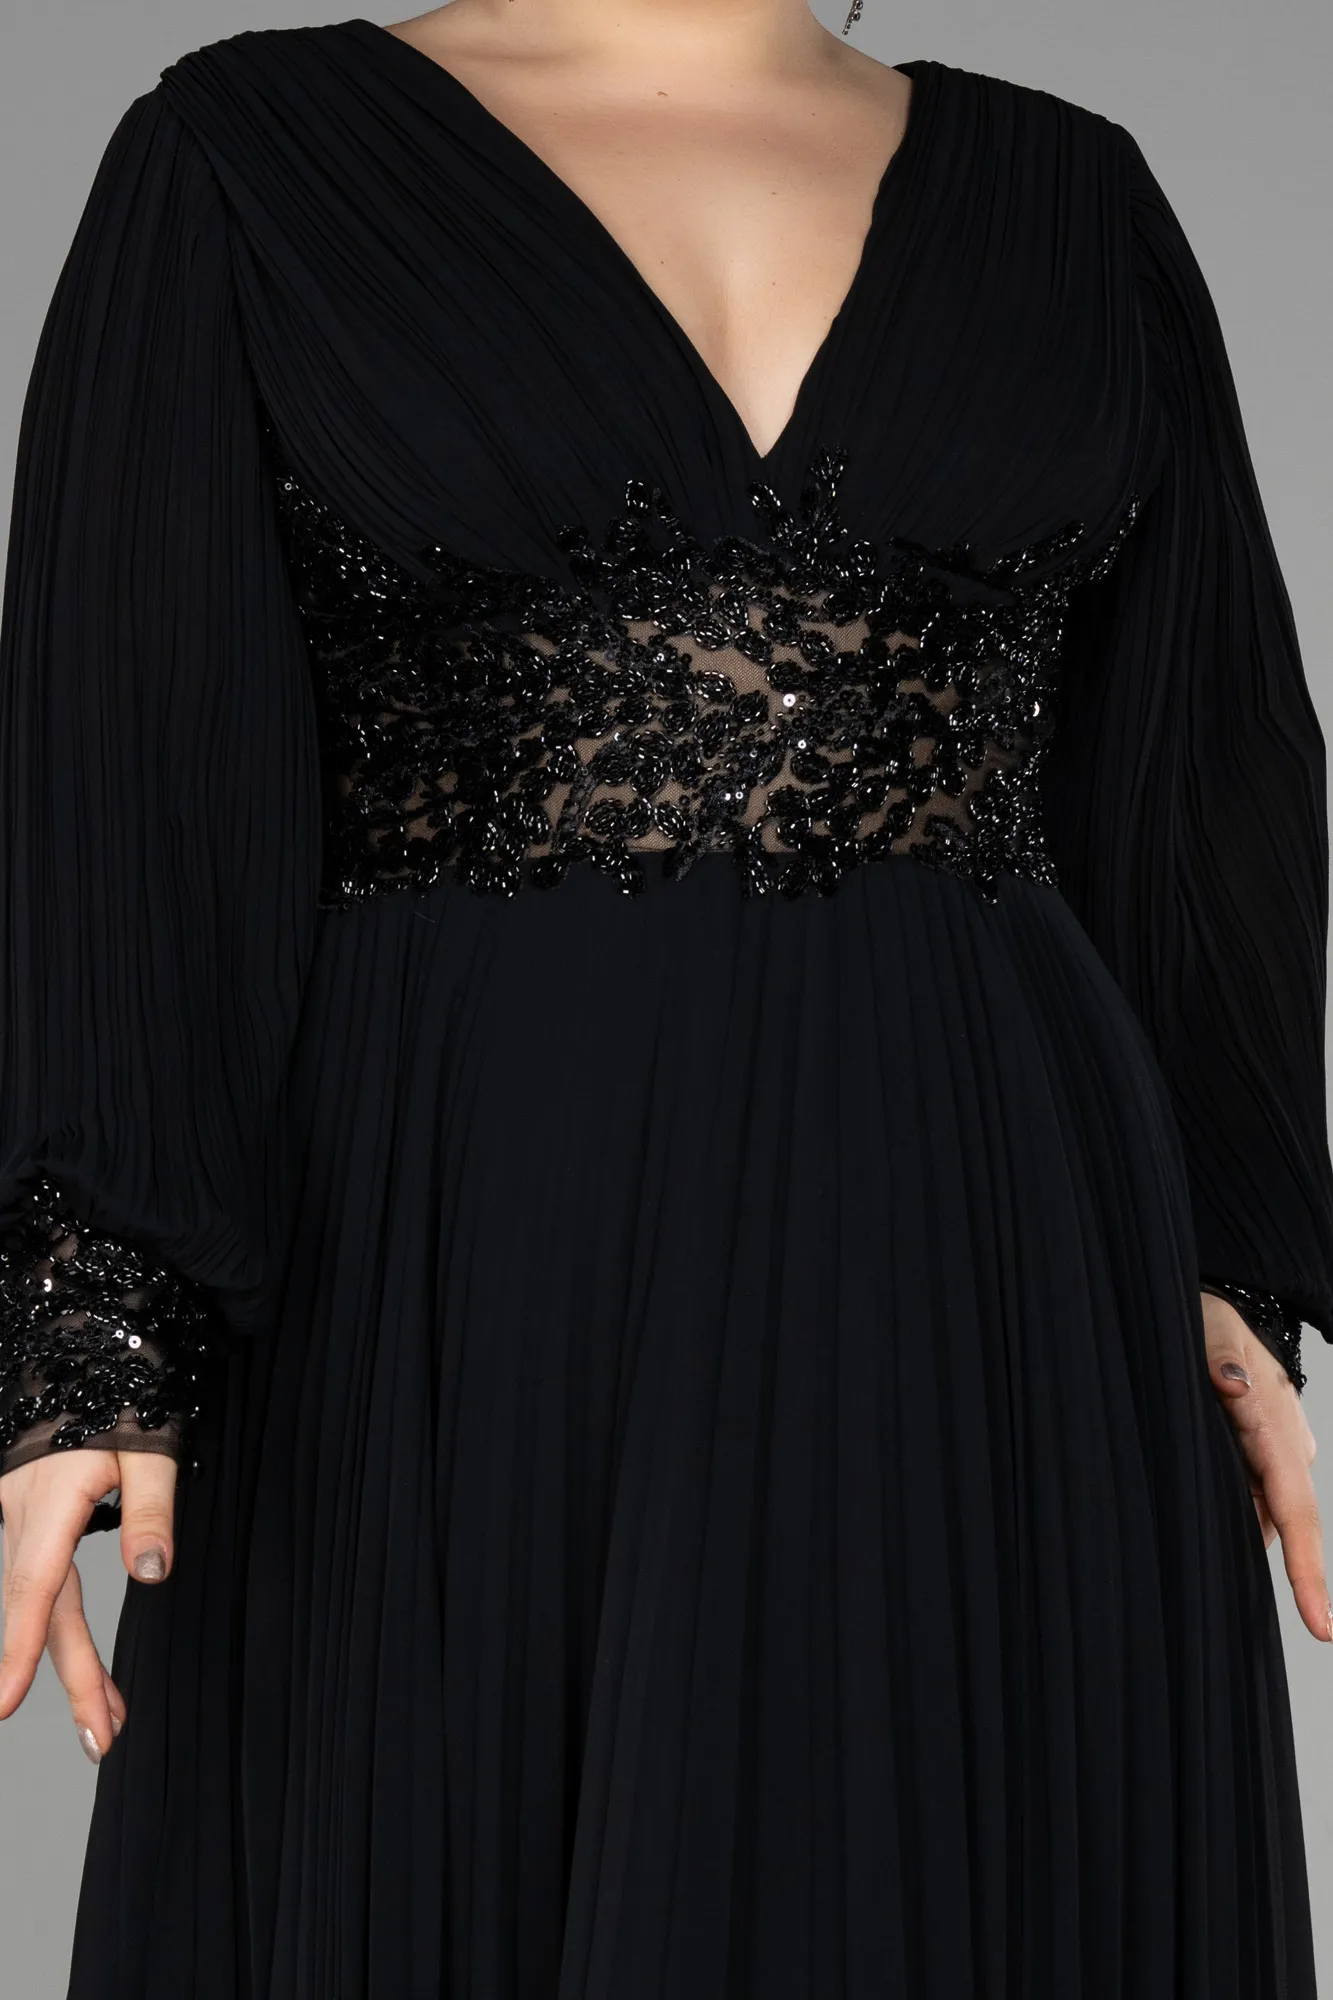 Black-Long Chiffon Plus Size Engagement Dress ABU3520